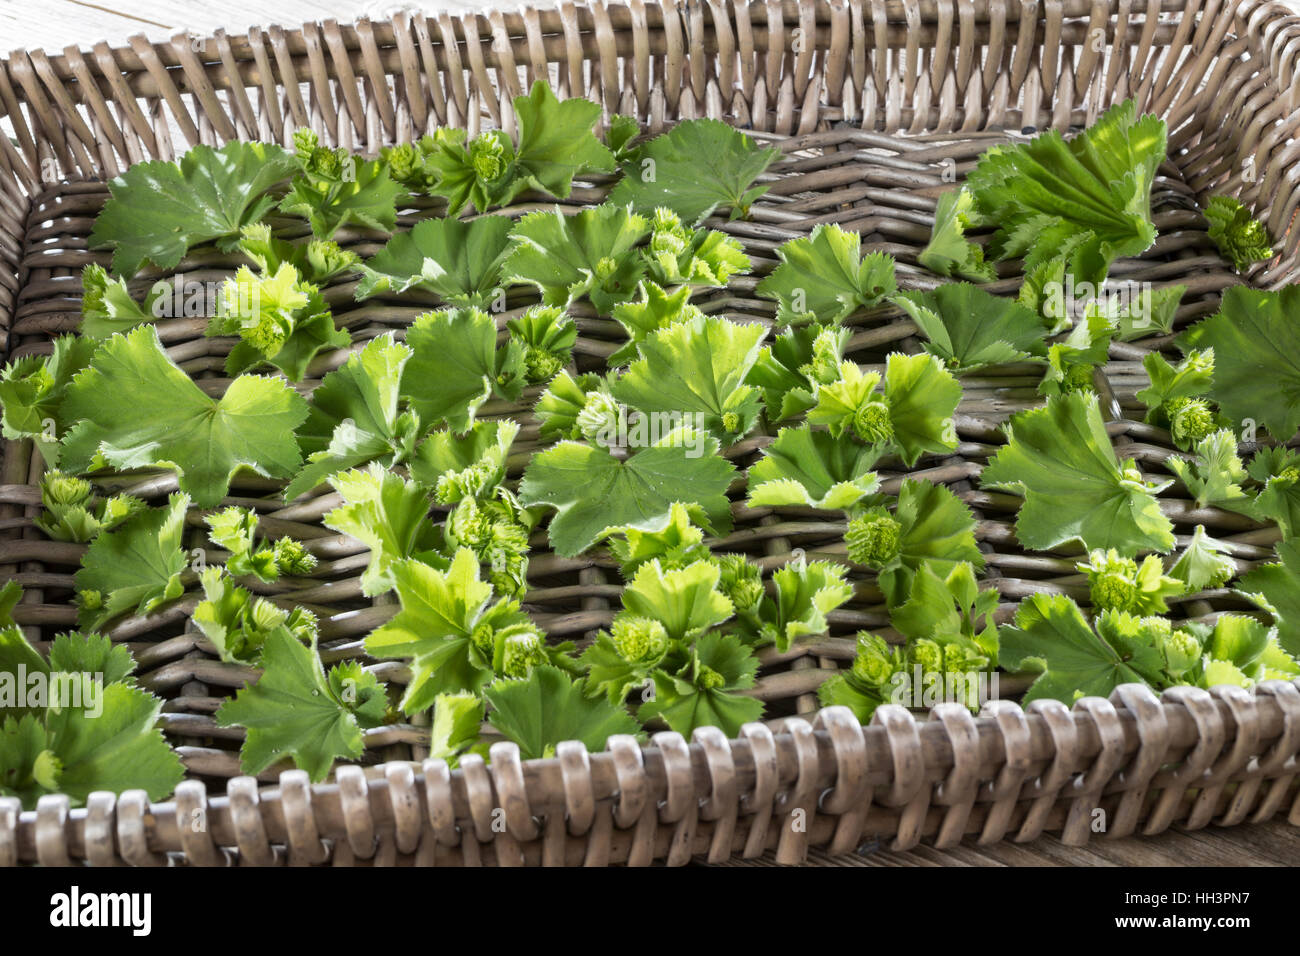 Frauenmantel, Blätter und Blüten werden auf Tablett getrocknet, Trocknung, Ernte, Frauenmantel, Alchemilla mollis Stock Photo